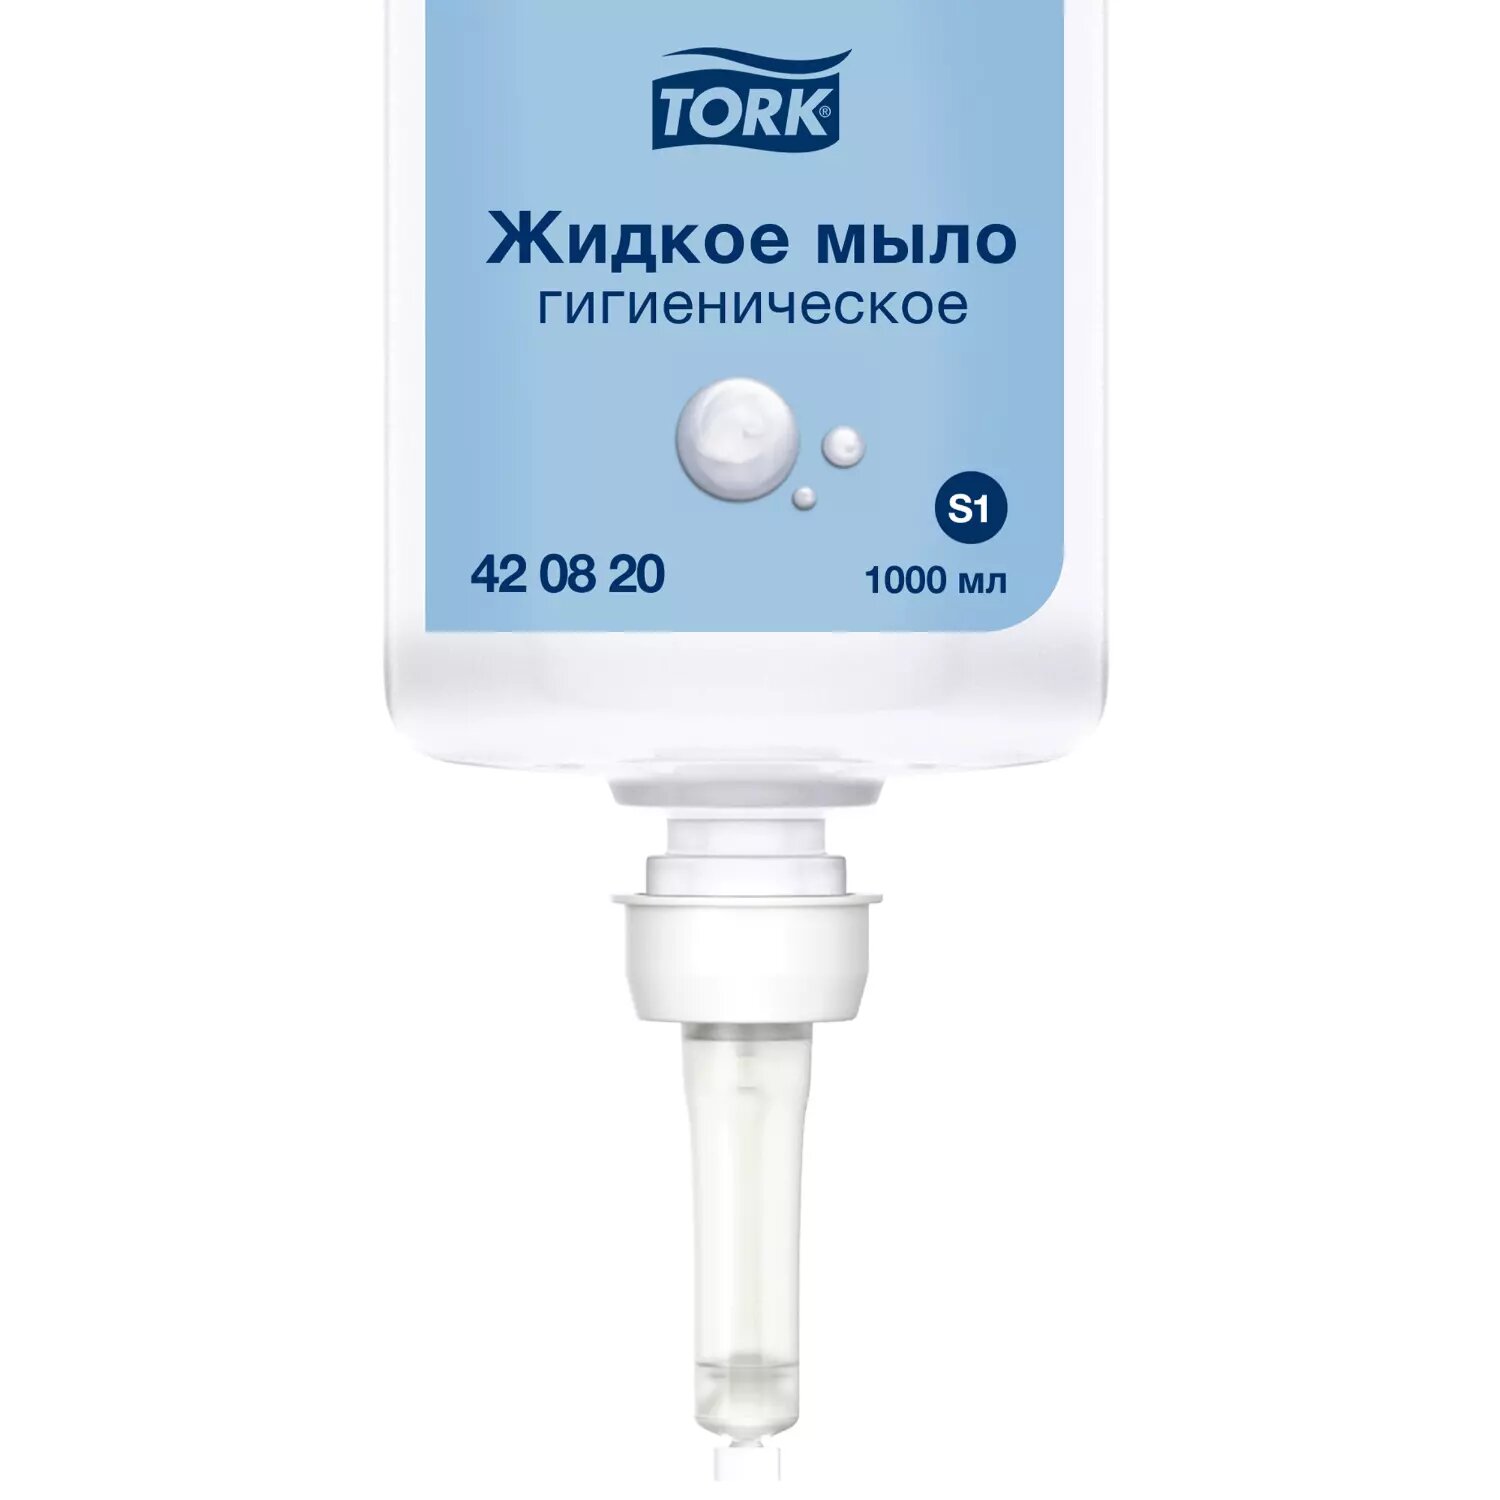 TORK Мыло жидкое Advanced гигиеническое, 1 л, 1 кг, арт. 420820